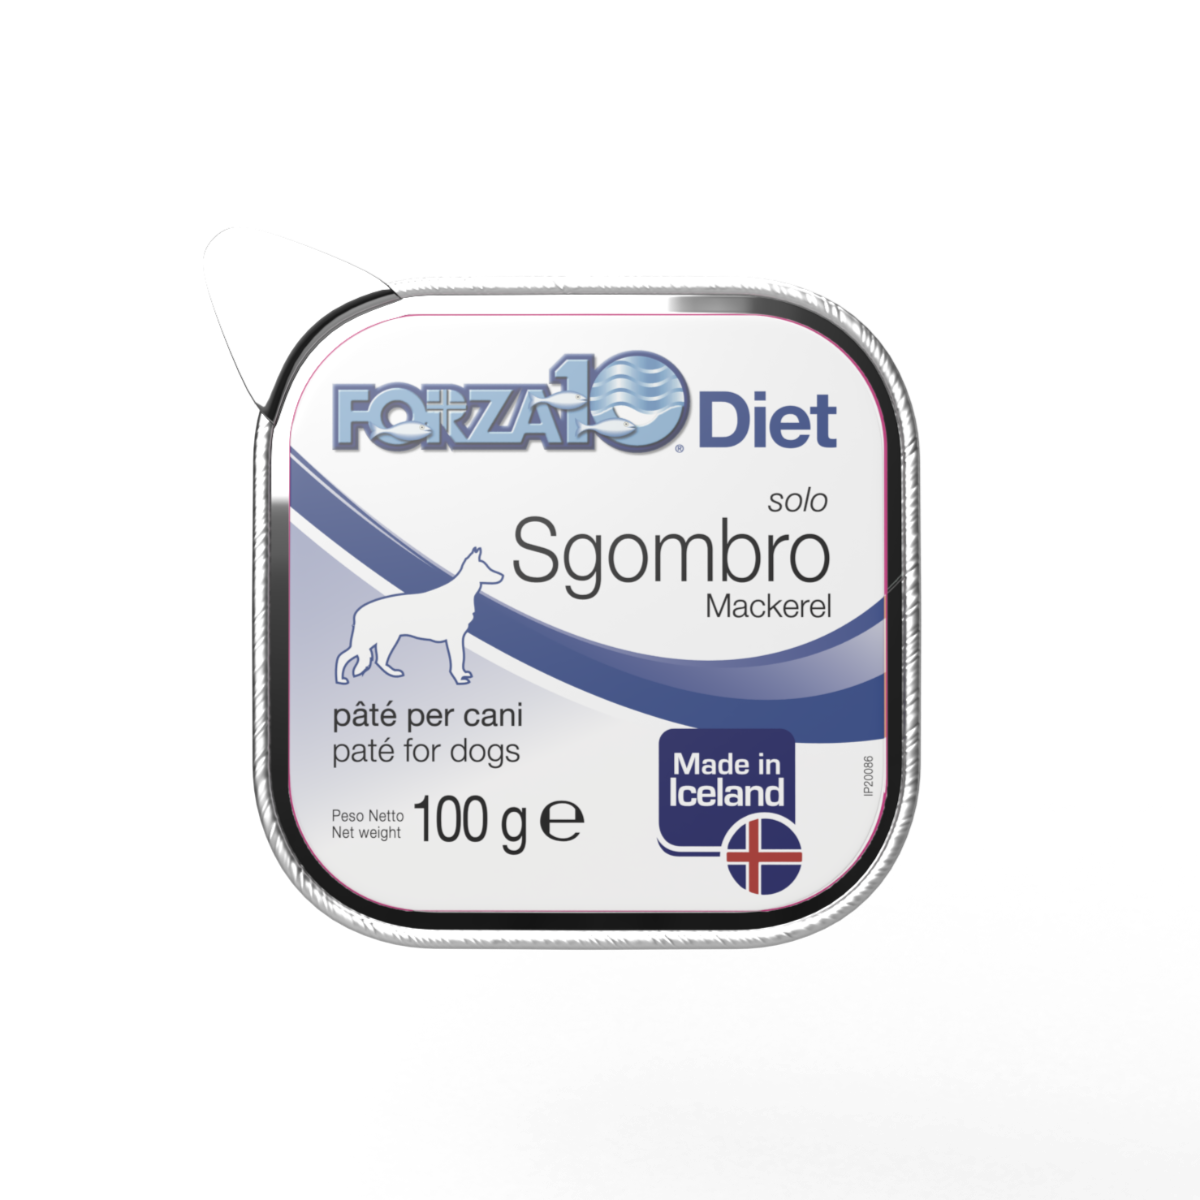 Forza10 Solo Diet mitrā barība, pastēte, konservs suņiem ar skumbriju (makreli). Hipoalerģiskd konservs jutīgiem suņiem.